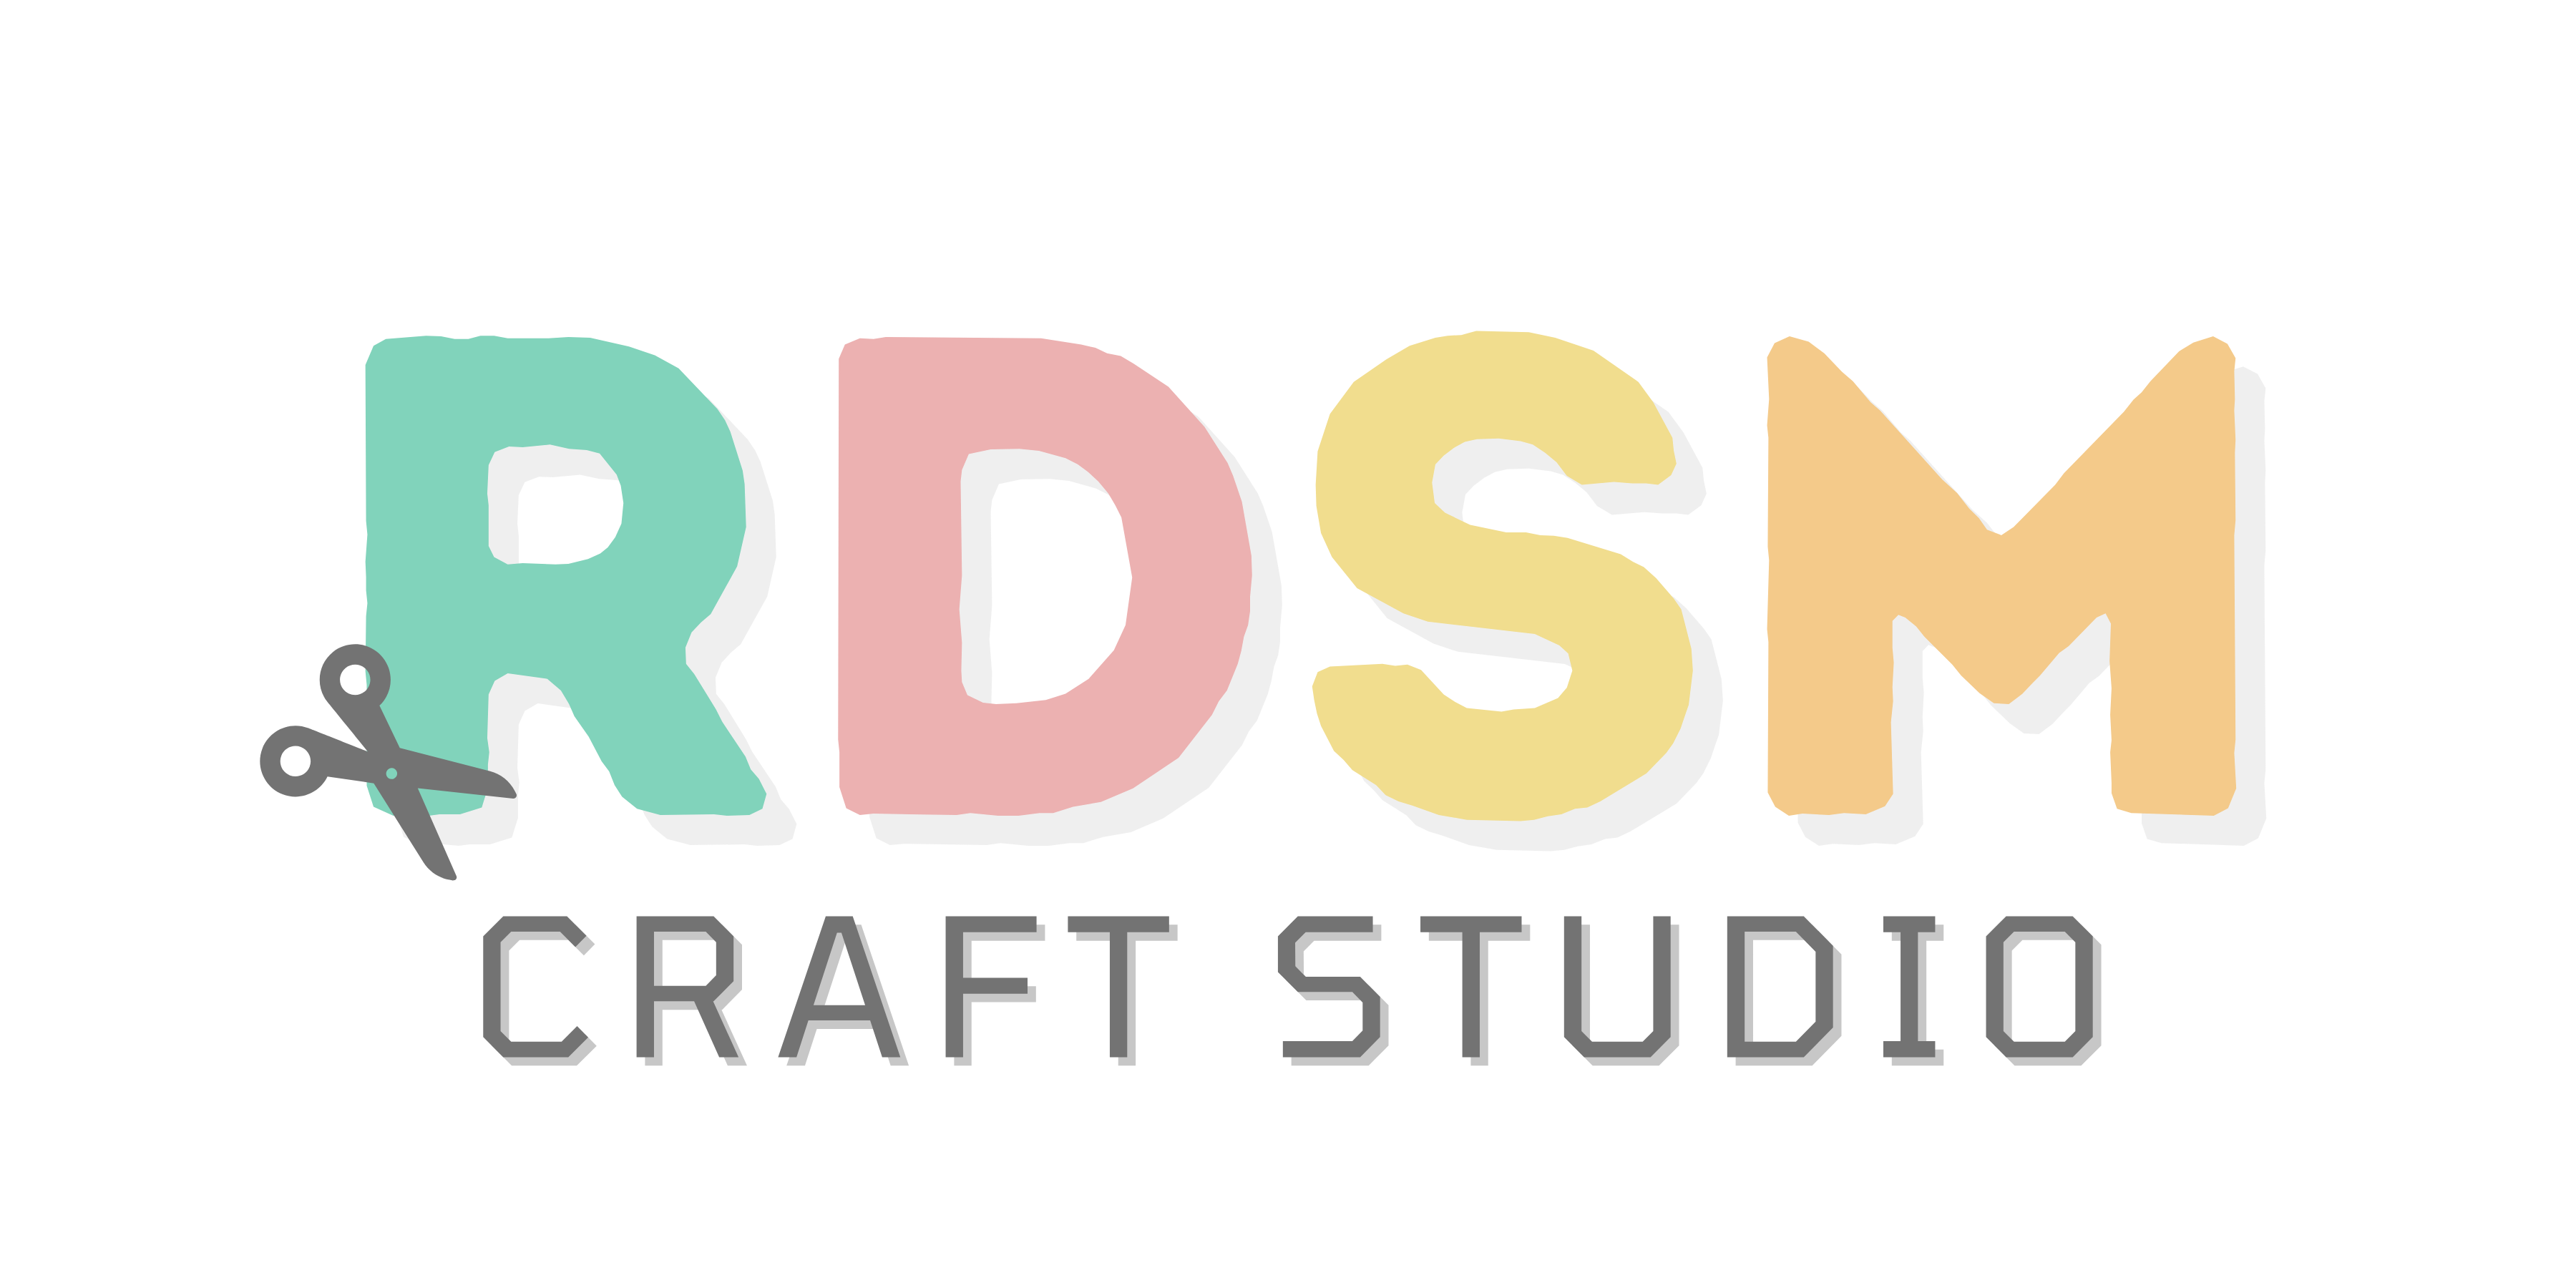 RDSM Craft Studio